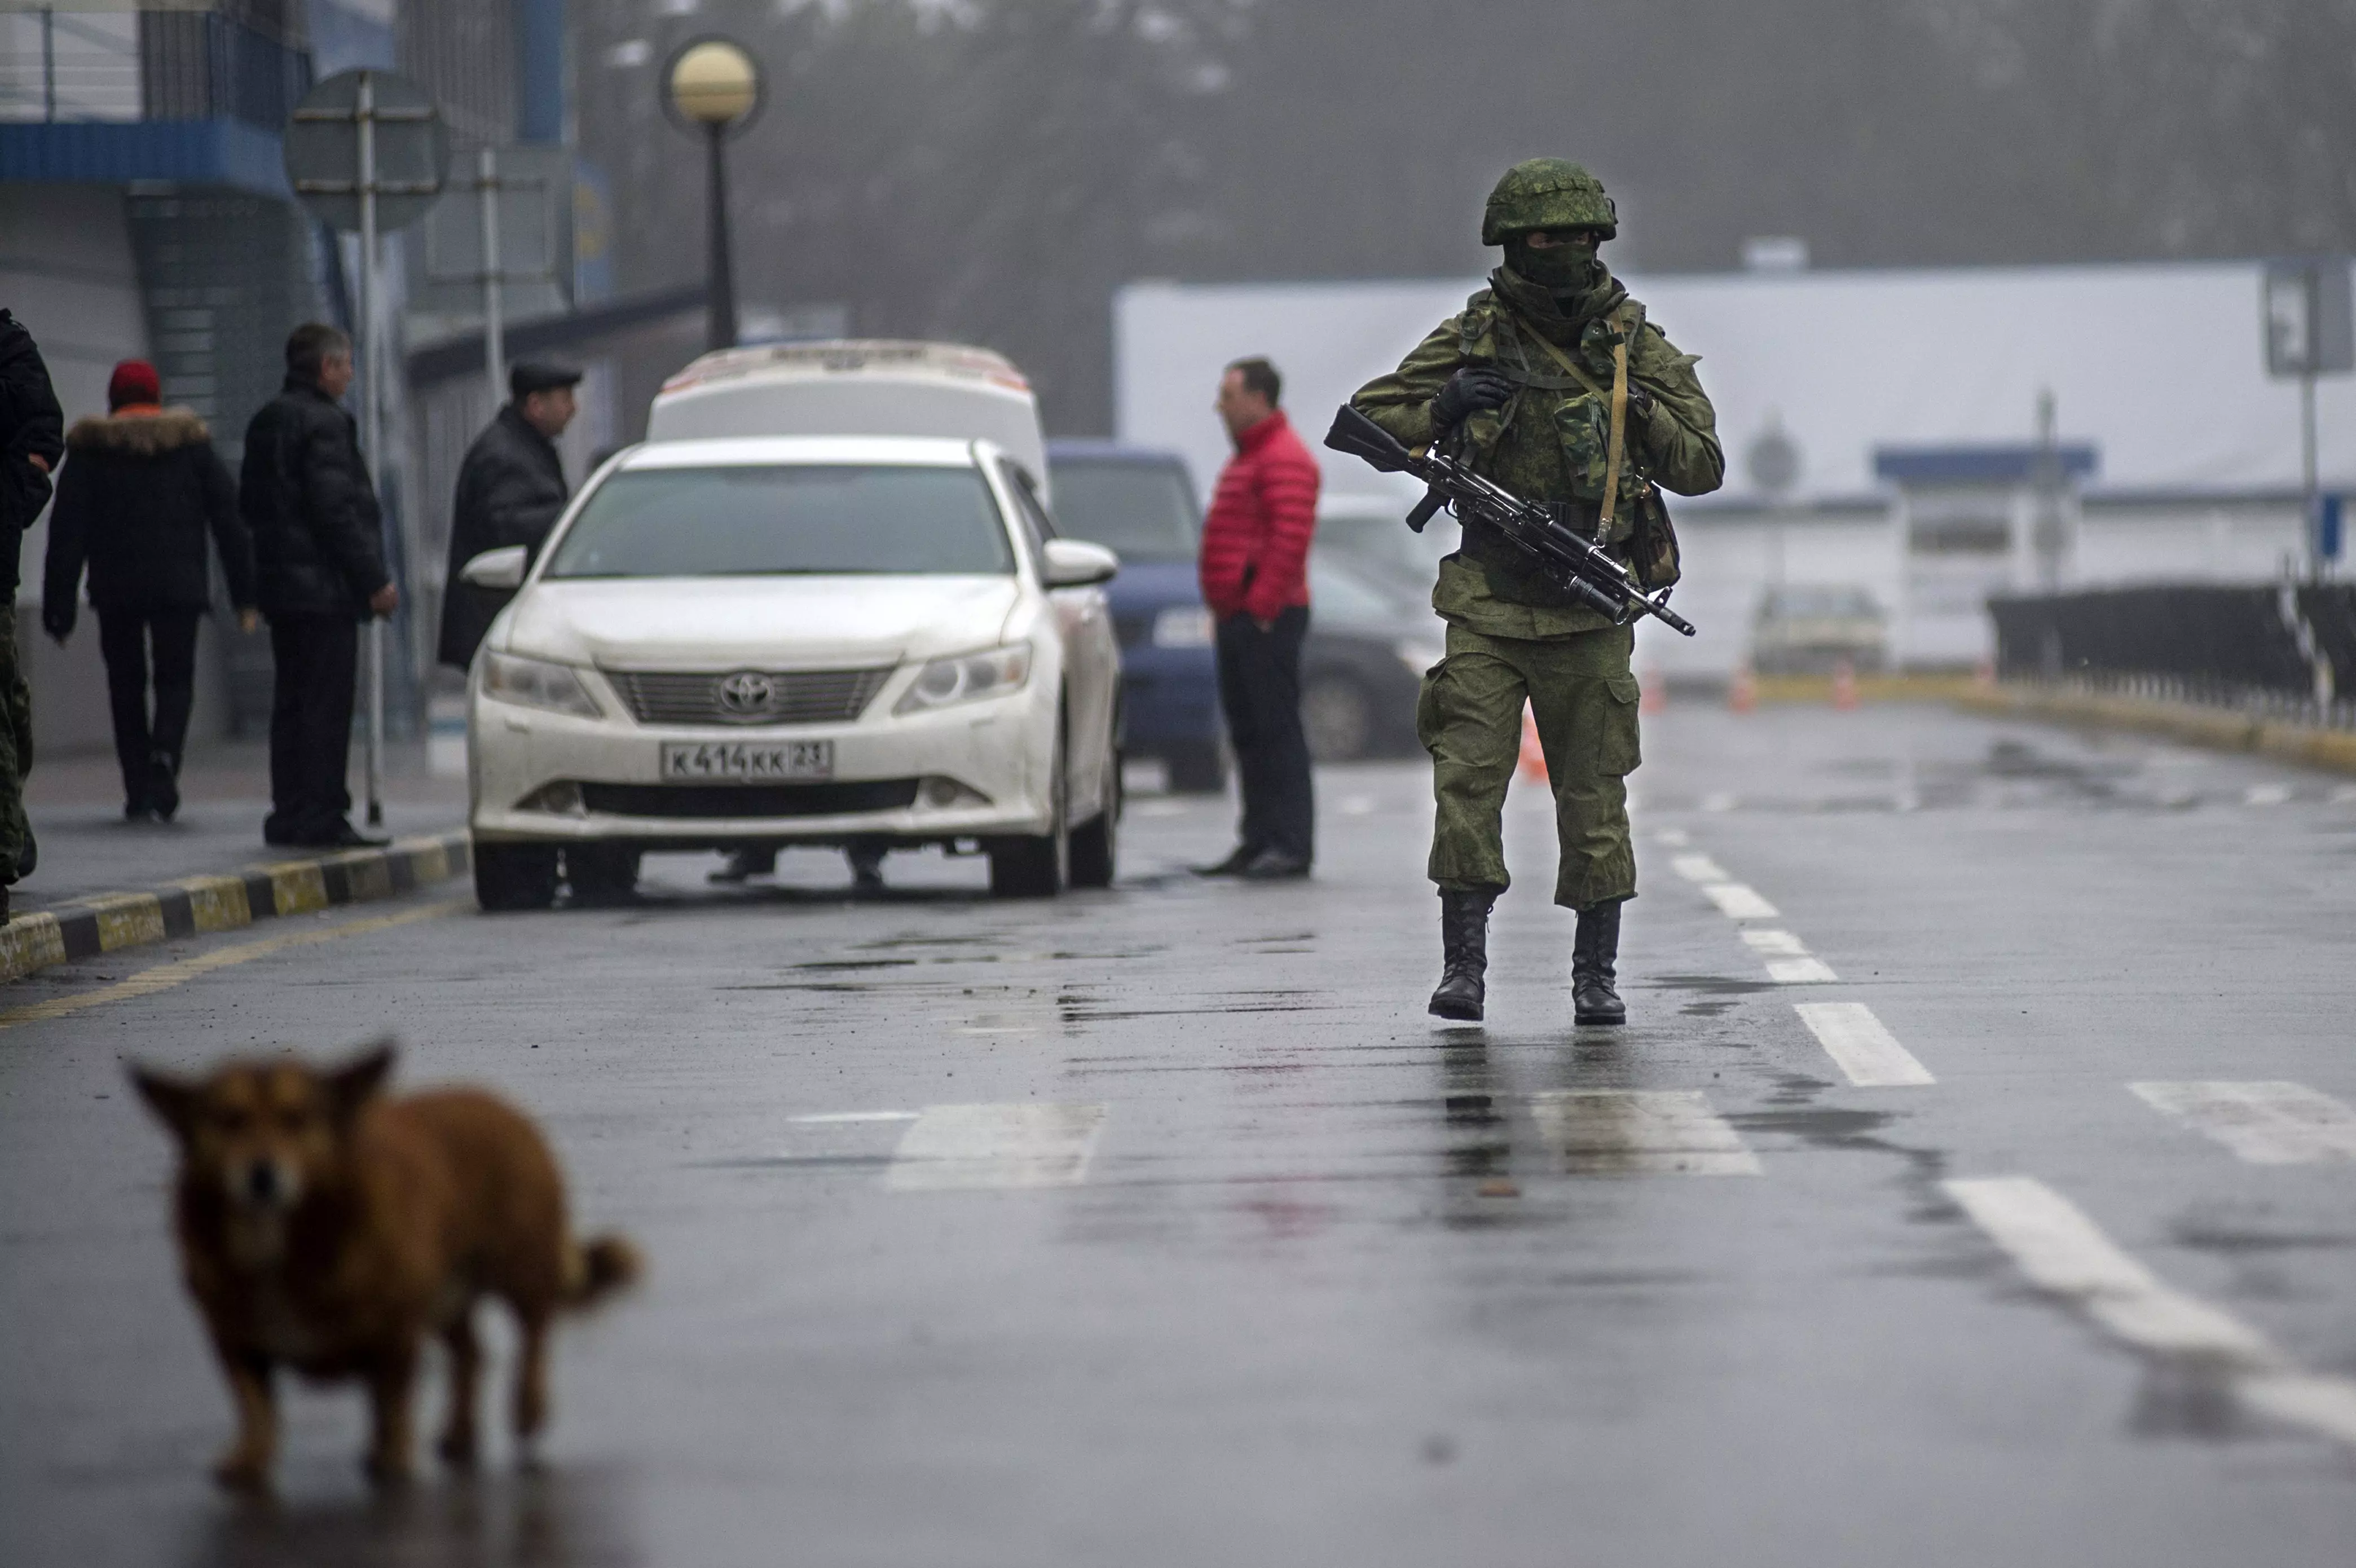 "הכוחות המזוינים האוקראינים יפעלו בהתאם לחוקי המדינה ולנהלי הצבא". כוחות צבא בחצי האי קרים